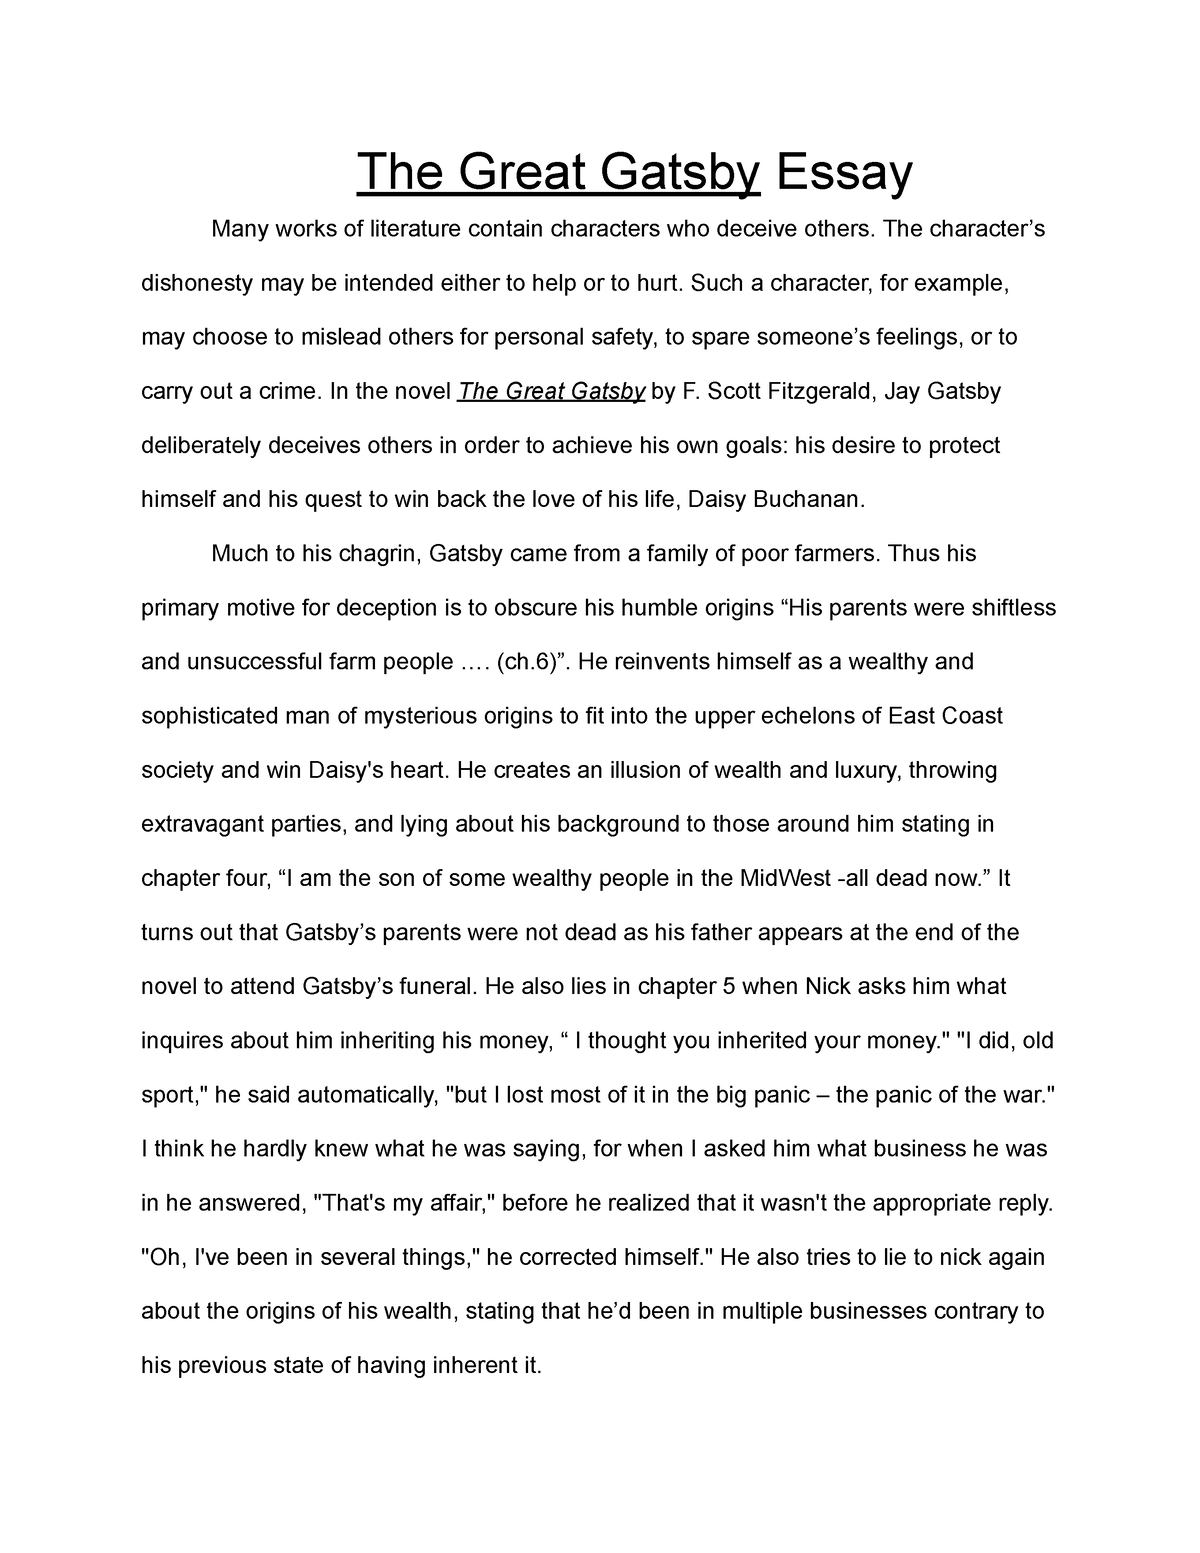 great gatsby ap essay